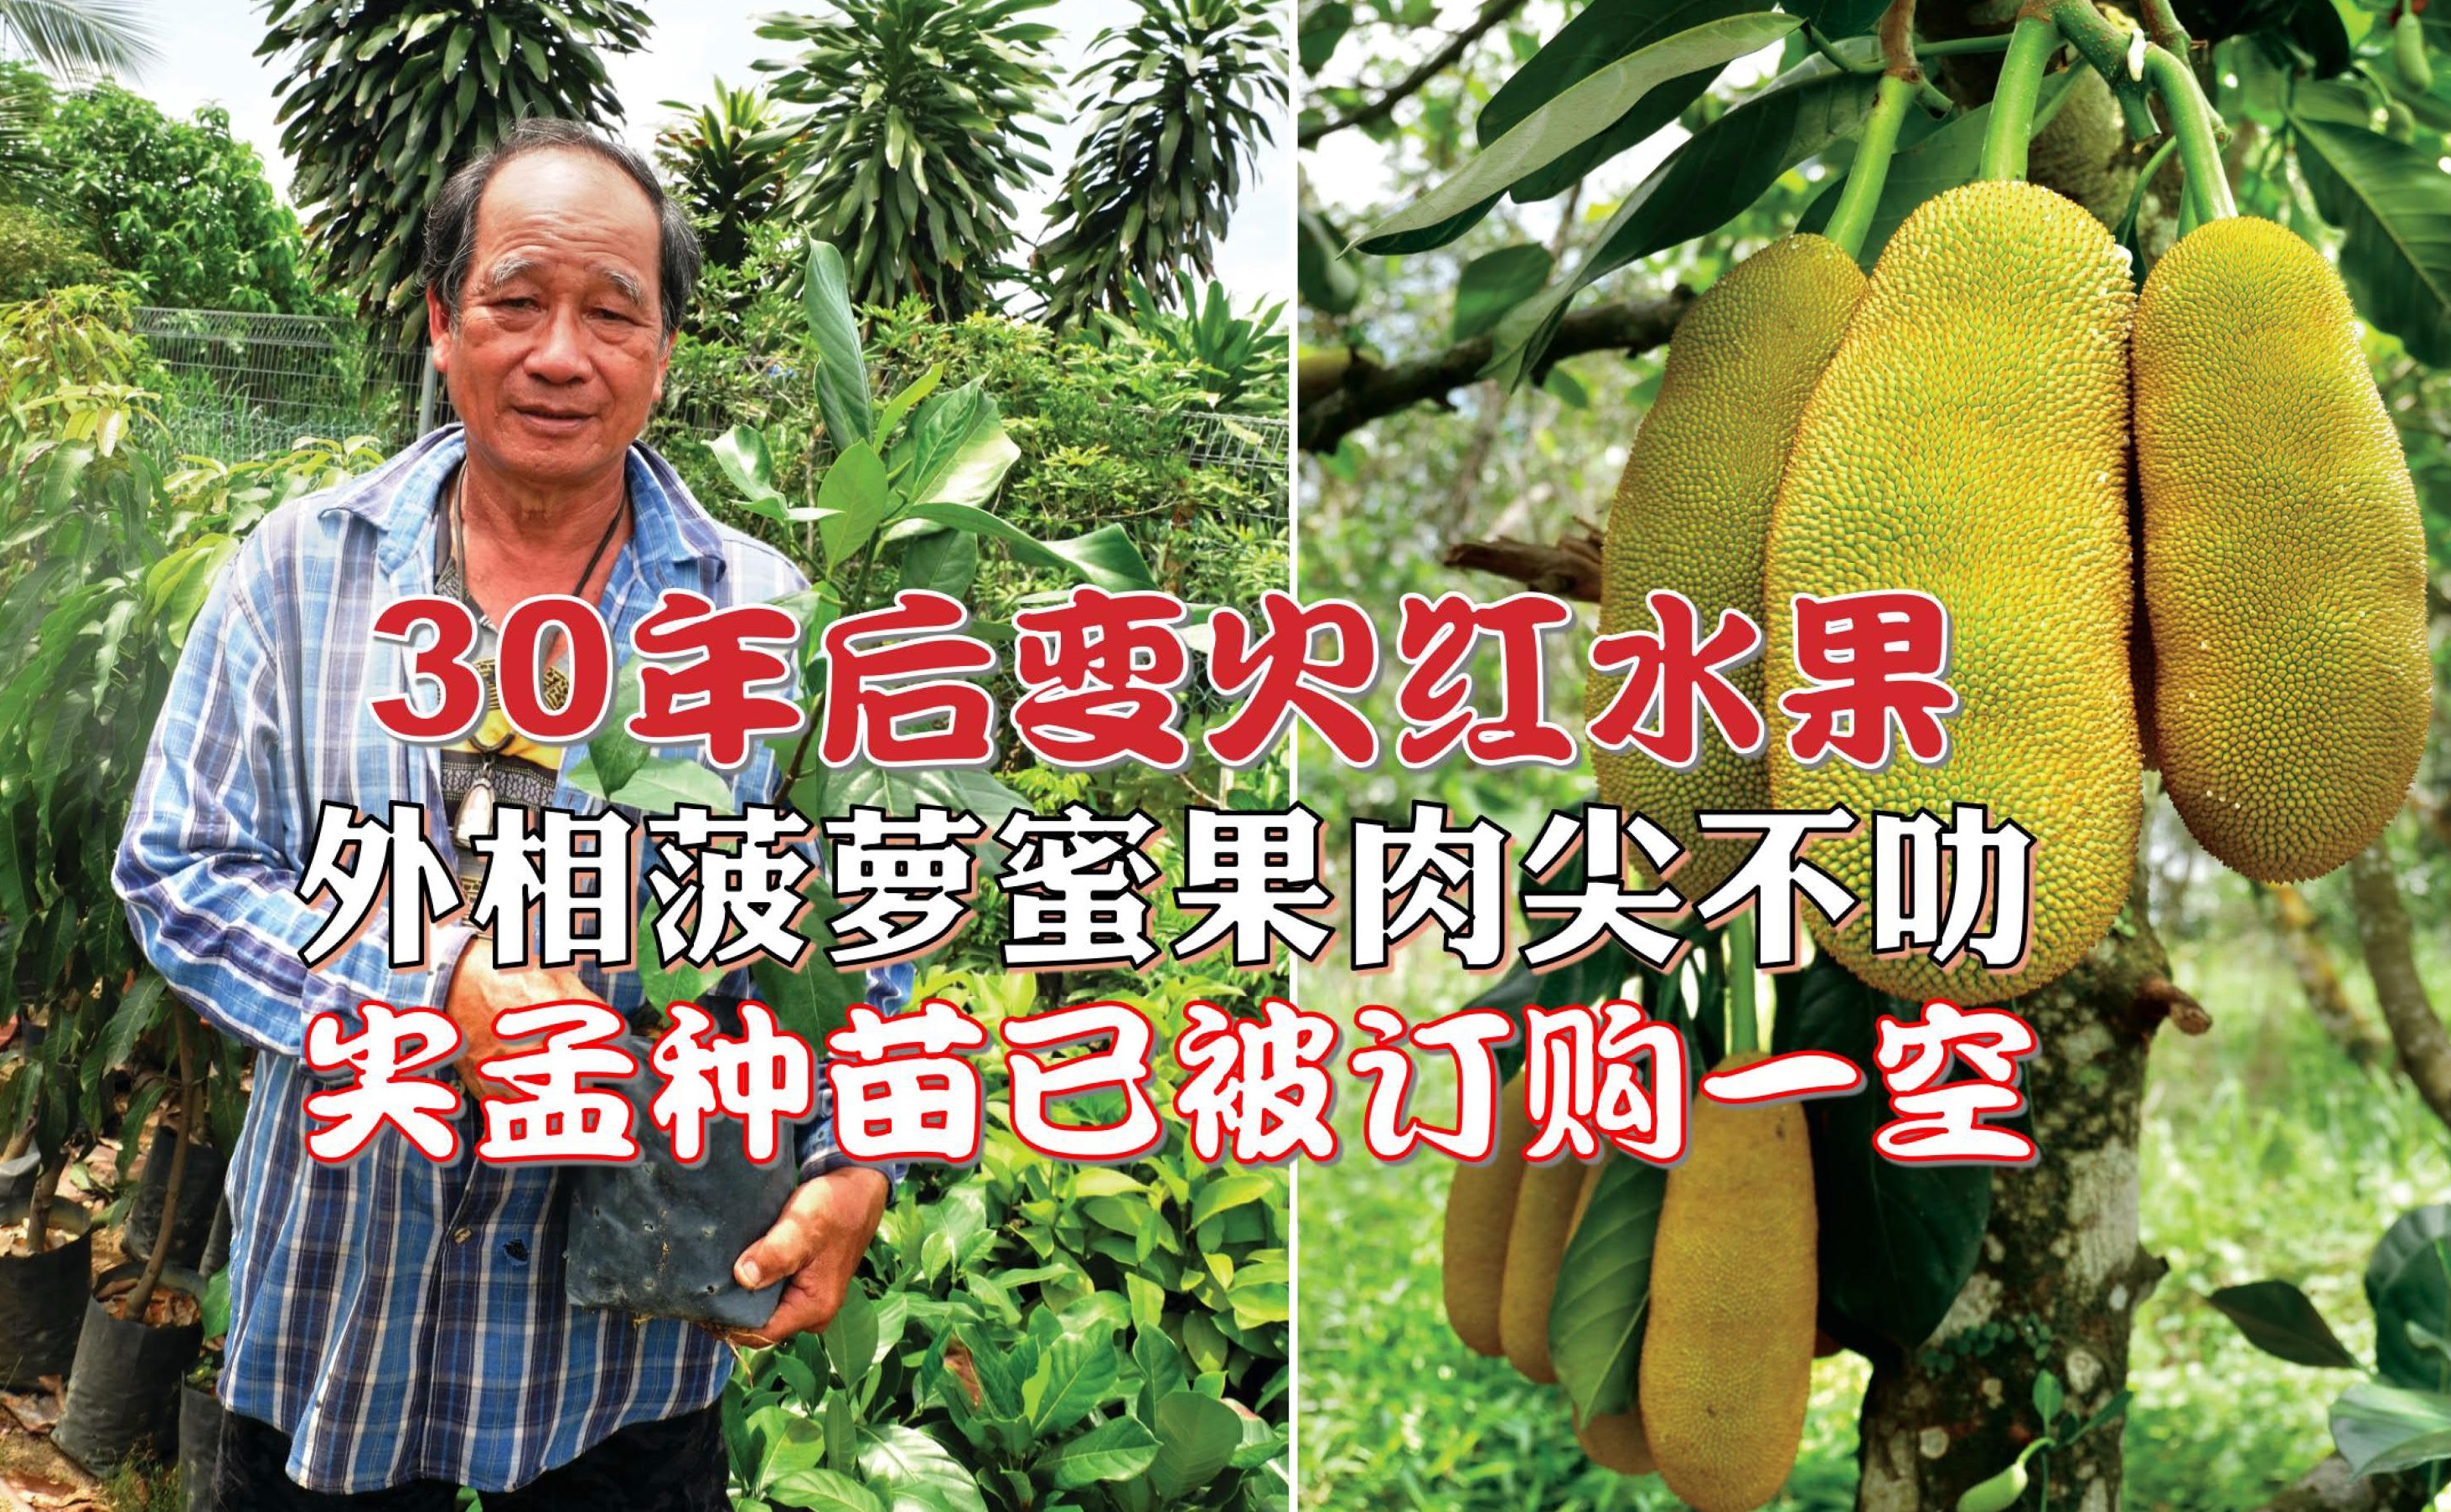 90年代初期已培苗出售 尖孟30年后变火红水果 - 农牧世界